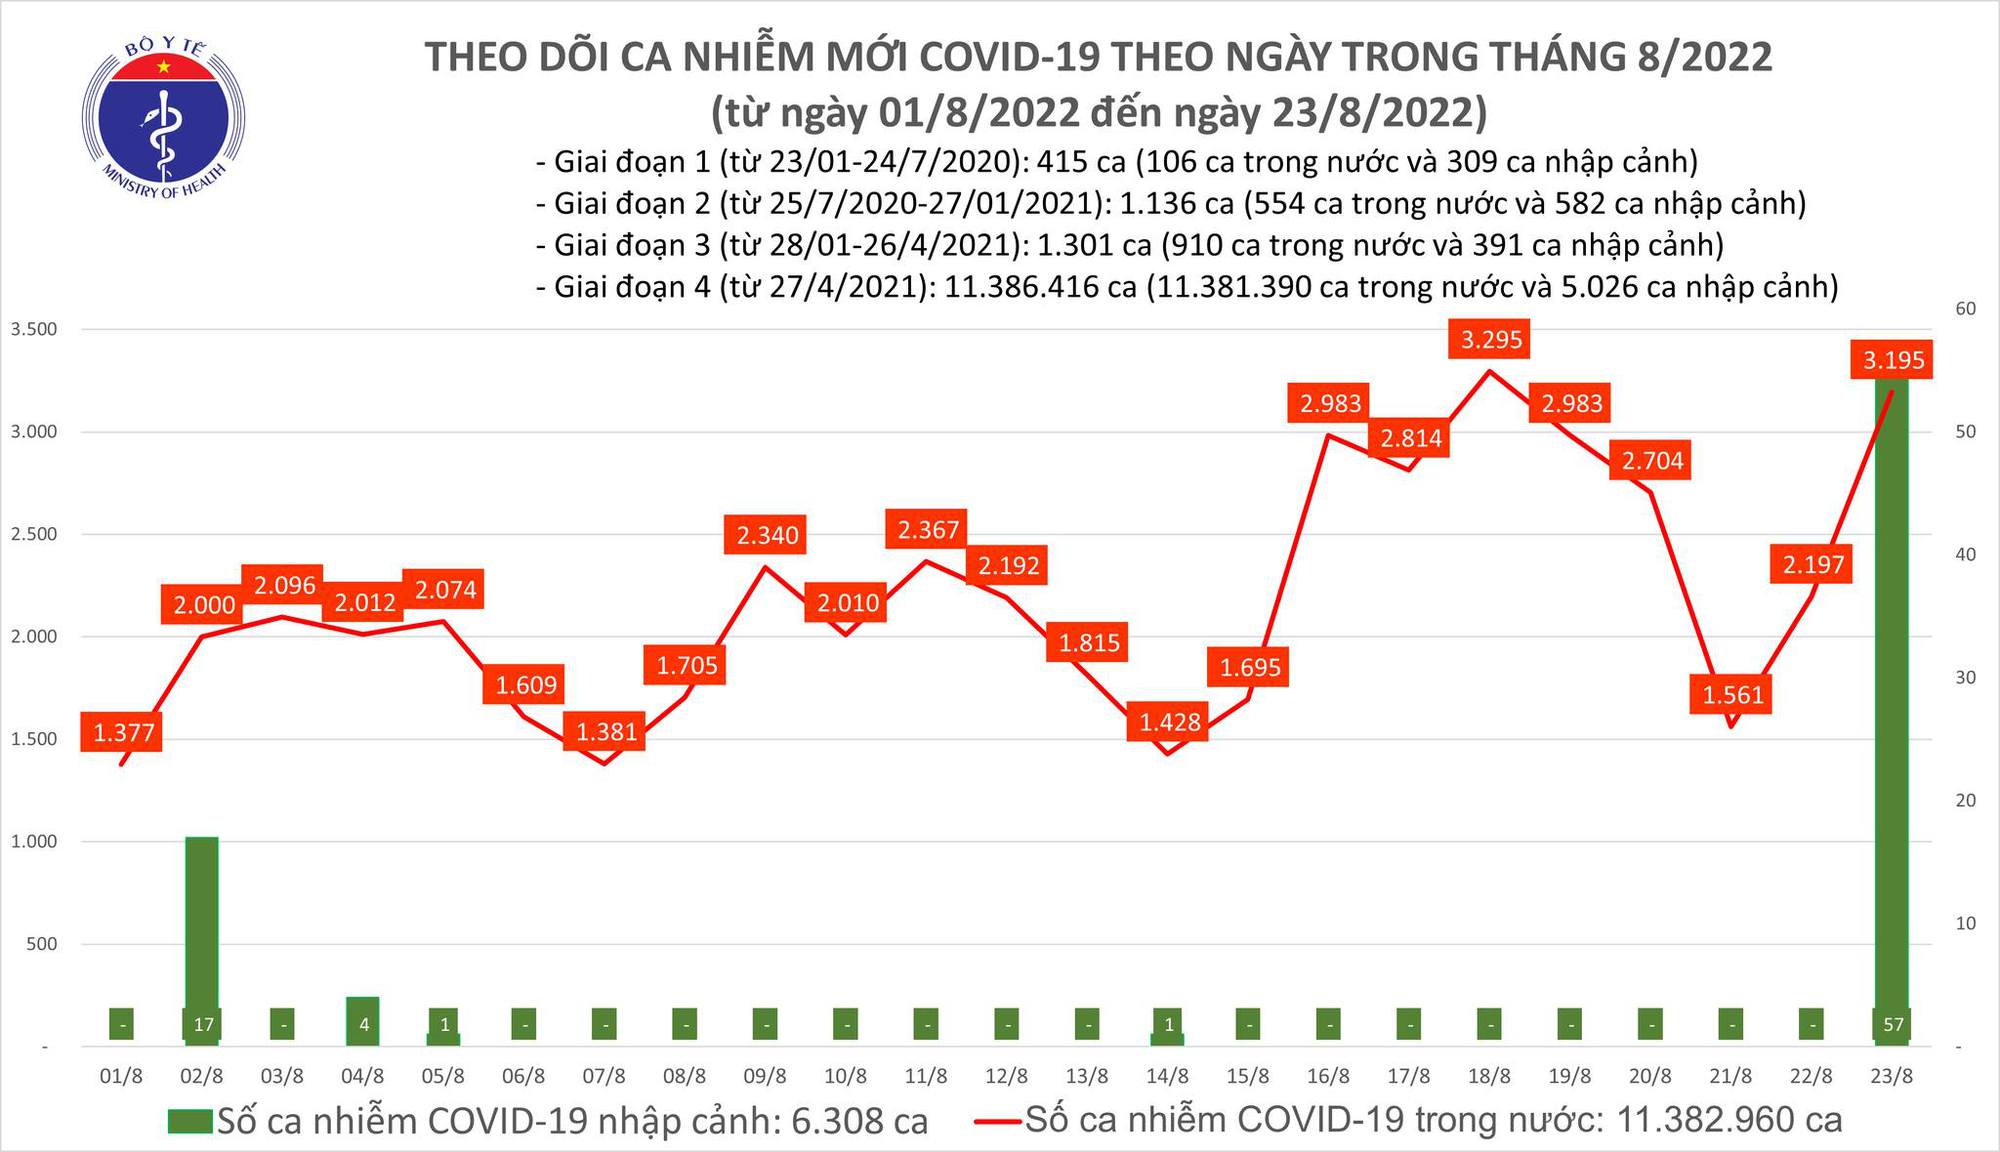 Ngày 23/8: Ca COVID-19 tăng vọt lên 3.195, cao nhất trong 5 ngày qua-1